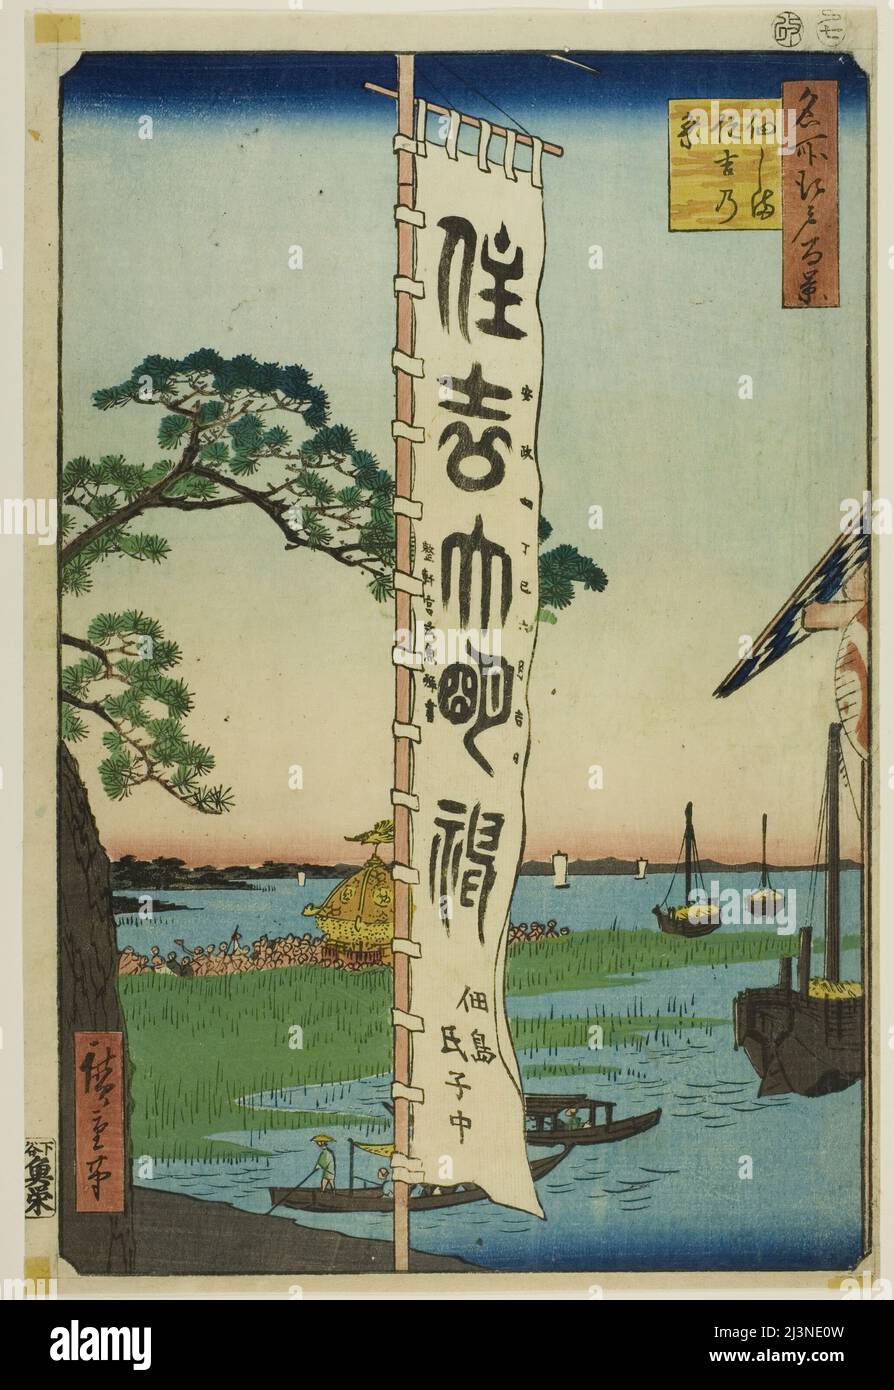 Sumiyoshi Festival all'isola di Tsukuda (Tsukudajima Sumiyoshi no matsuri), dalla serie "cento viste famose di Edo (Meisho Edo hyakkei)", 1857. Foto Stock